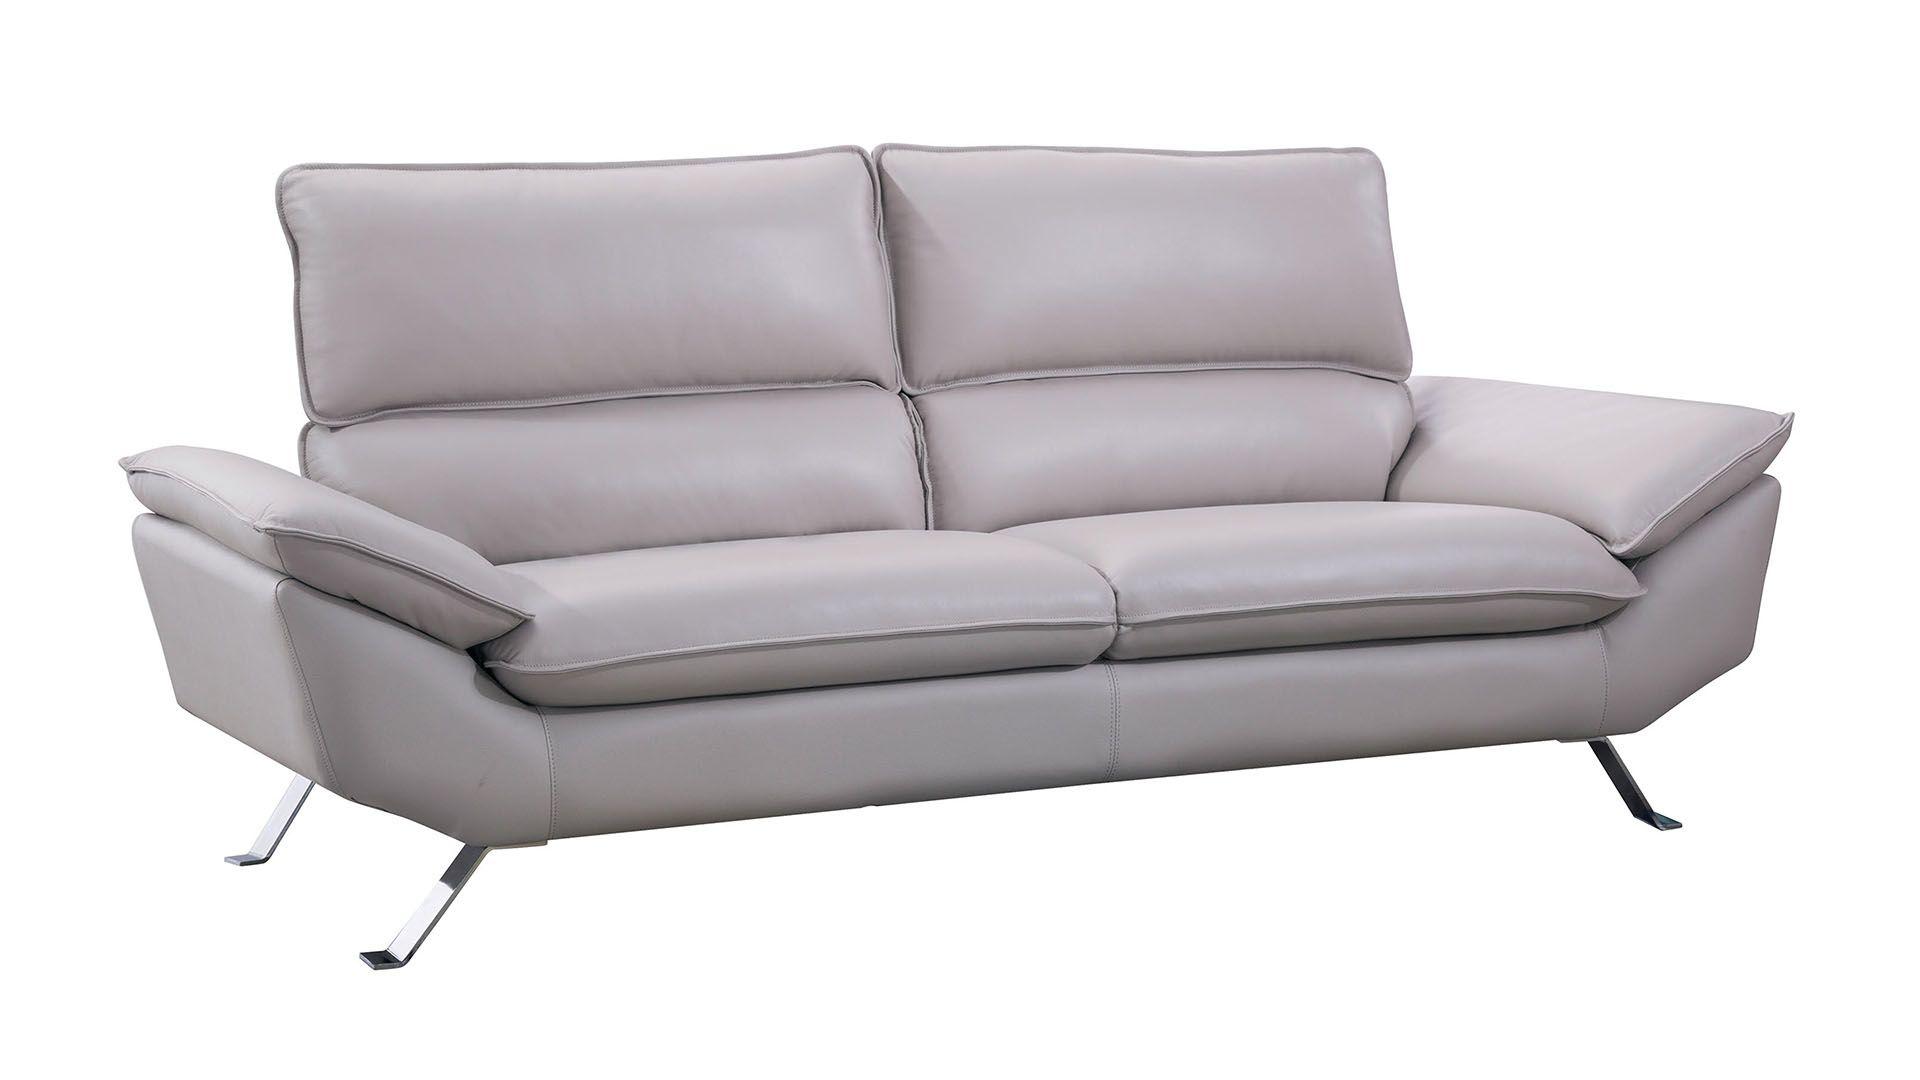 Contemporary, Modern Sofa EK152-LG-SF EK152-LG-SF in Light Gray Italian Leather